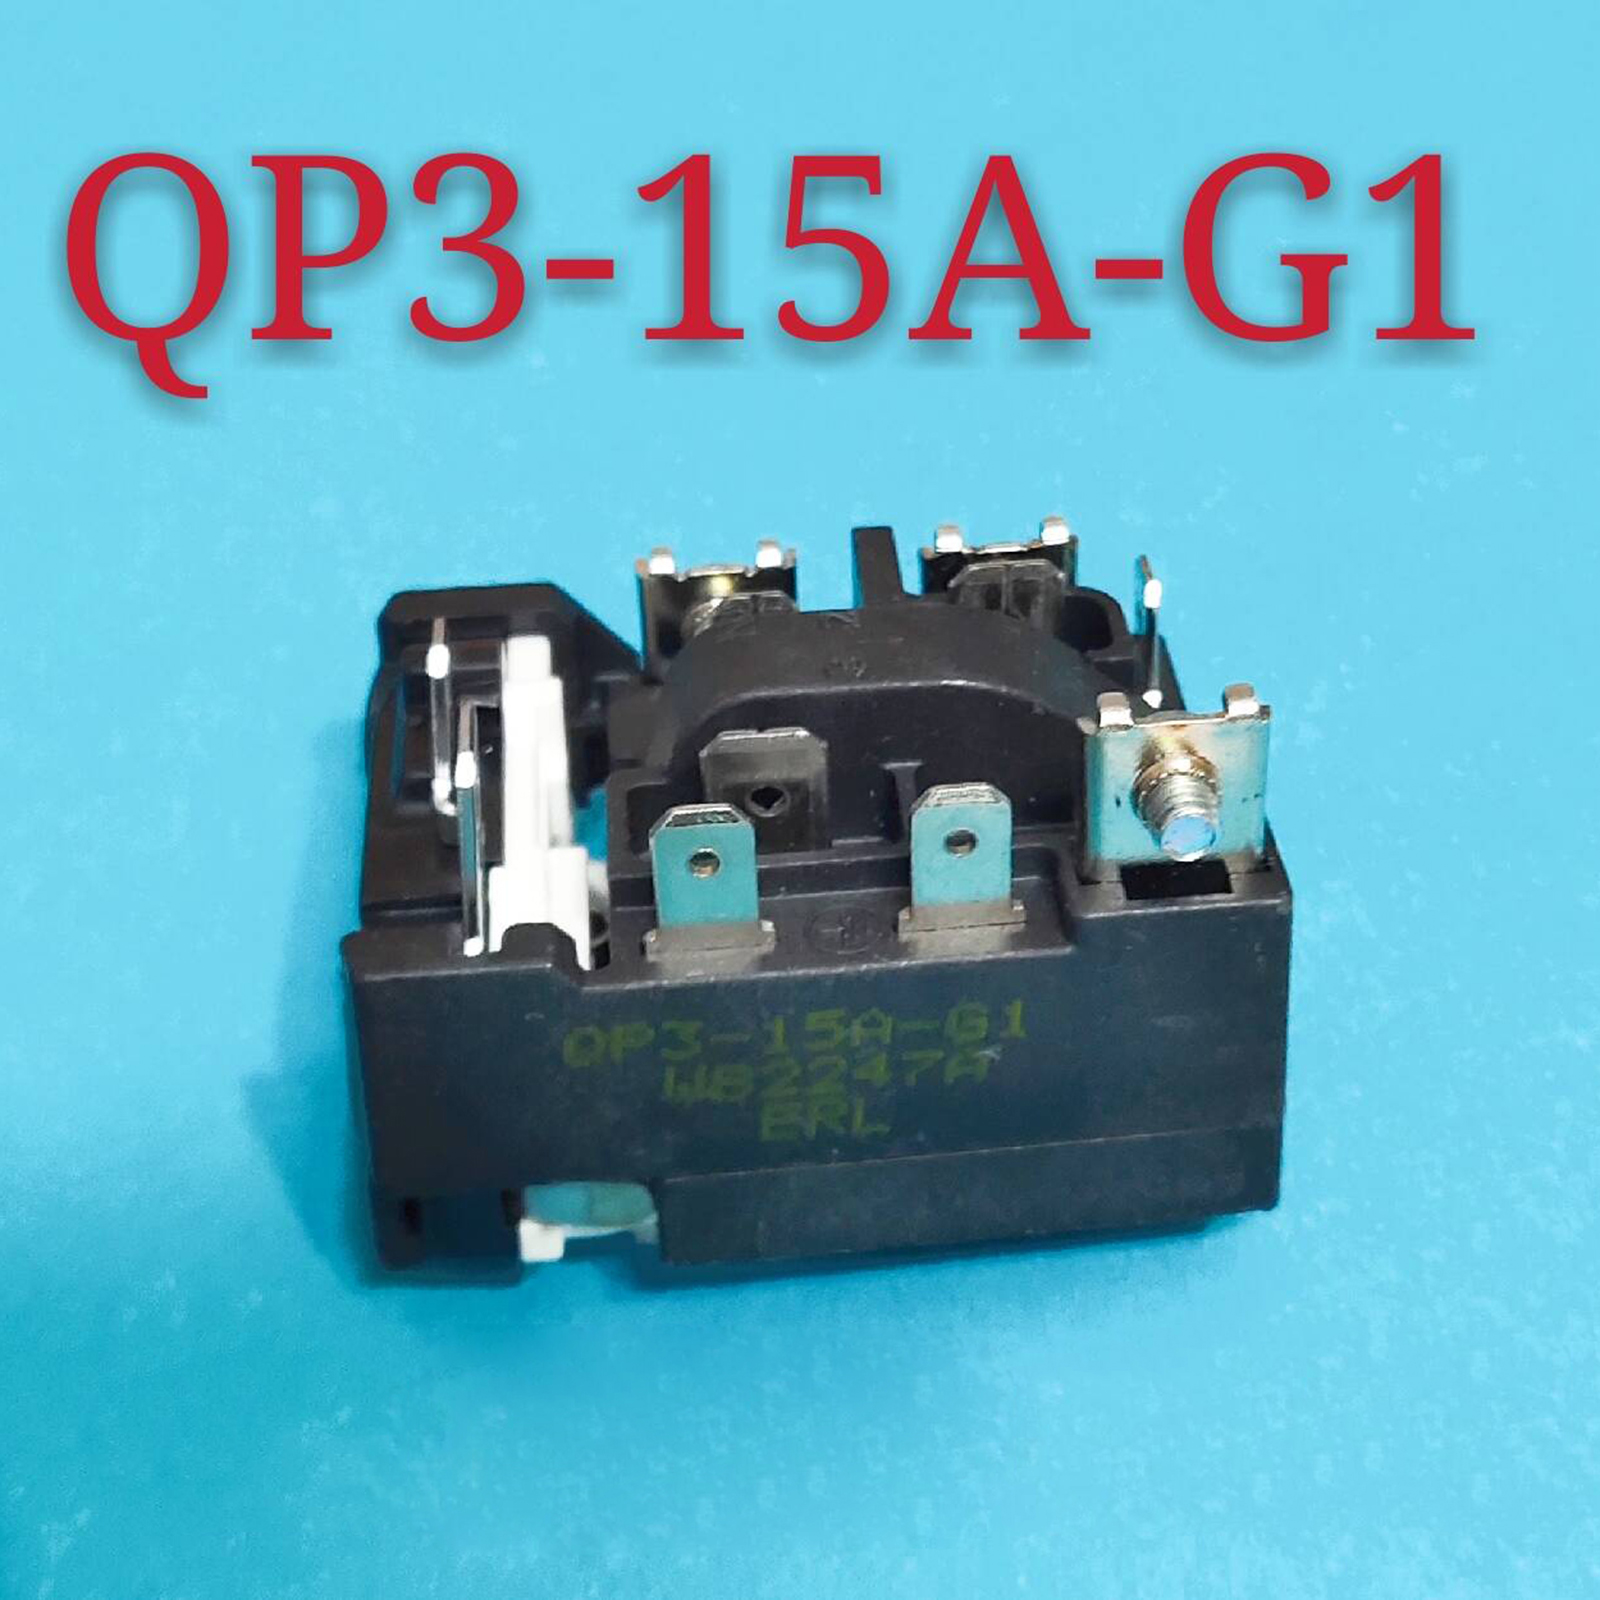 1pc startkompressor overbelastningsbeskyttelsesrelæ  qp3-15a-g1 til tilbehør til udskiftning af køle- / fryseskab